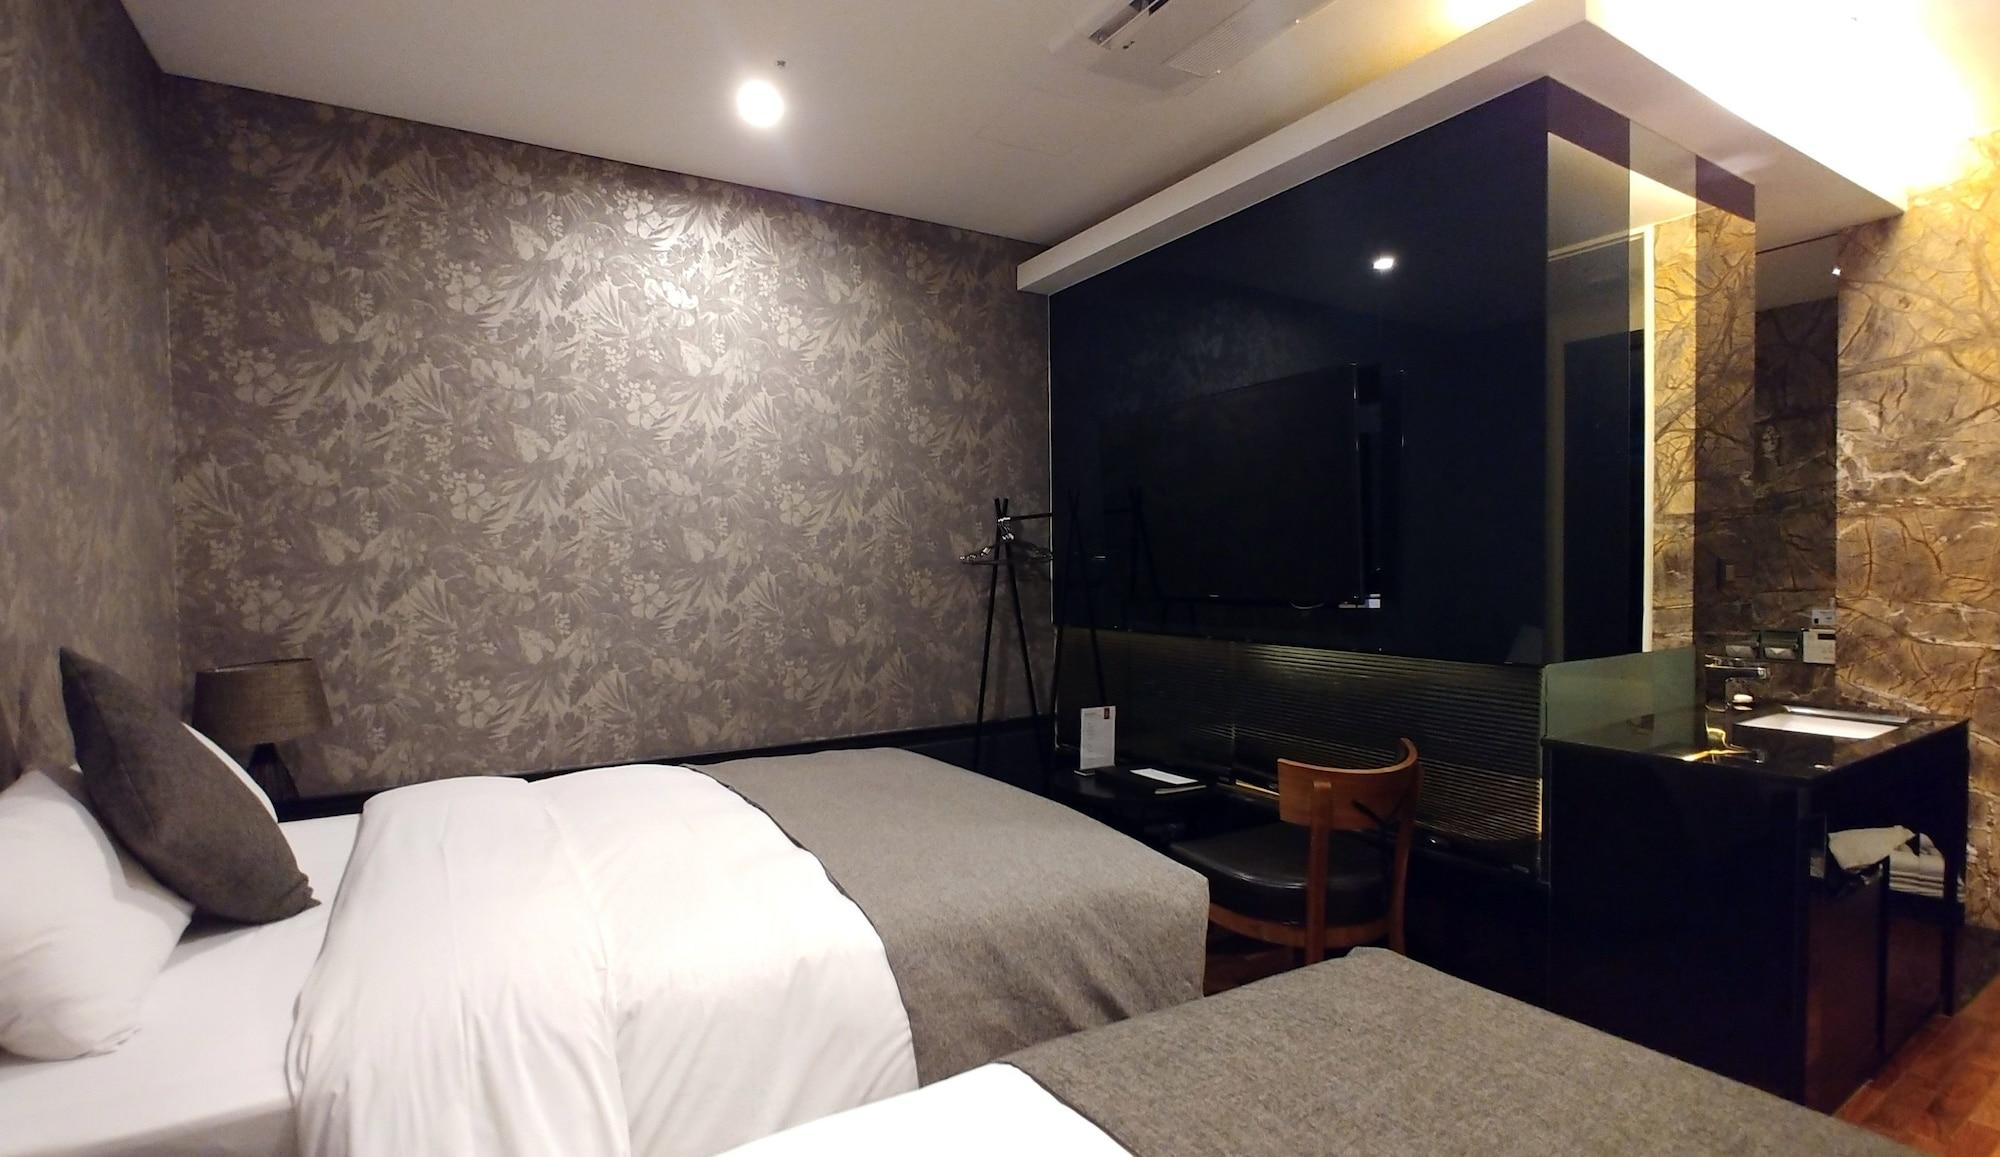 Sr Hotel Sadang Séoul Extérieur photo